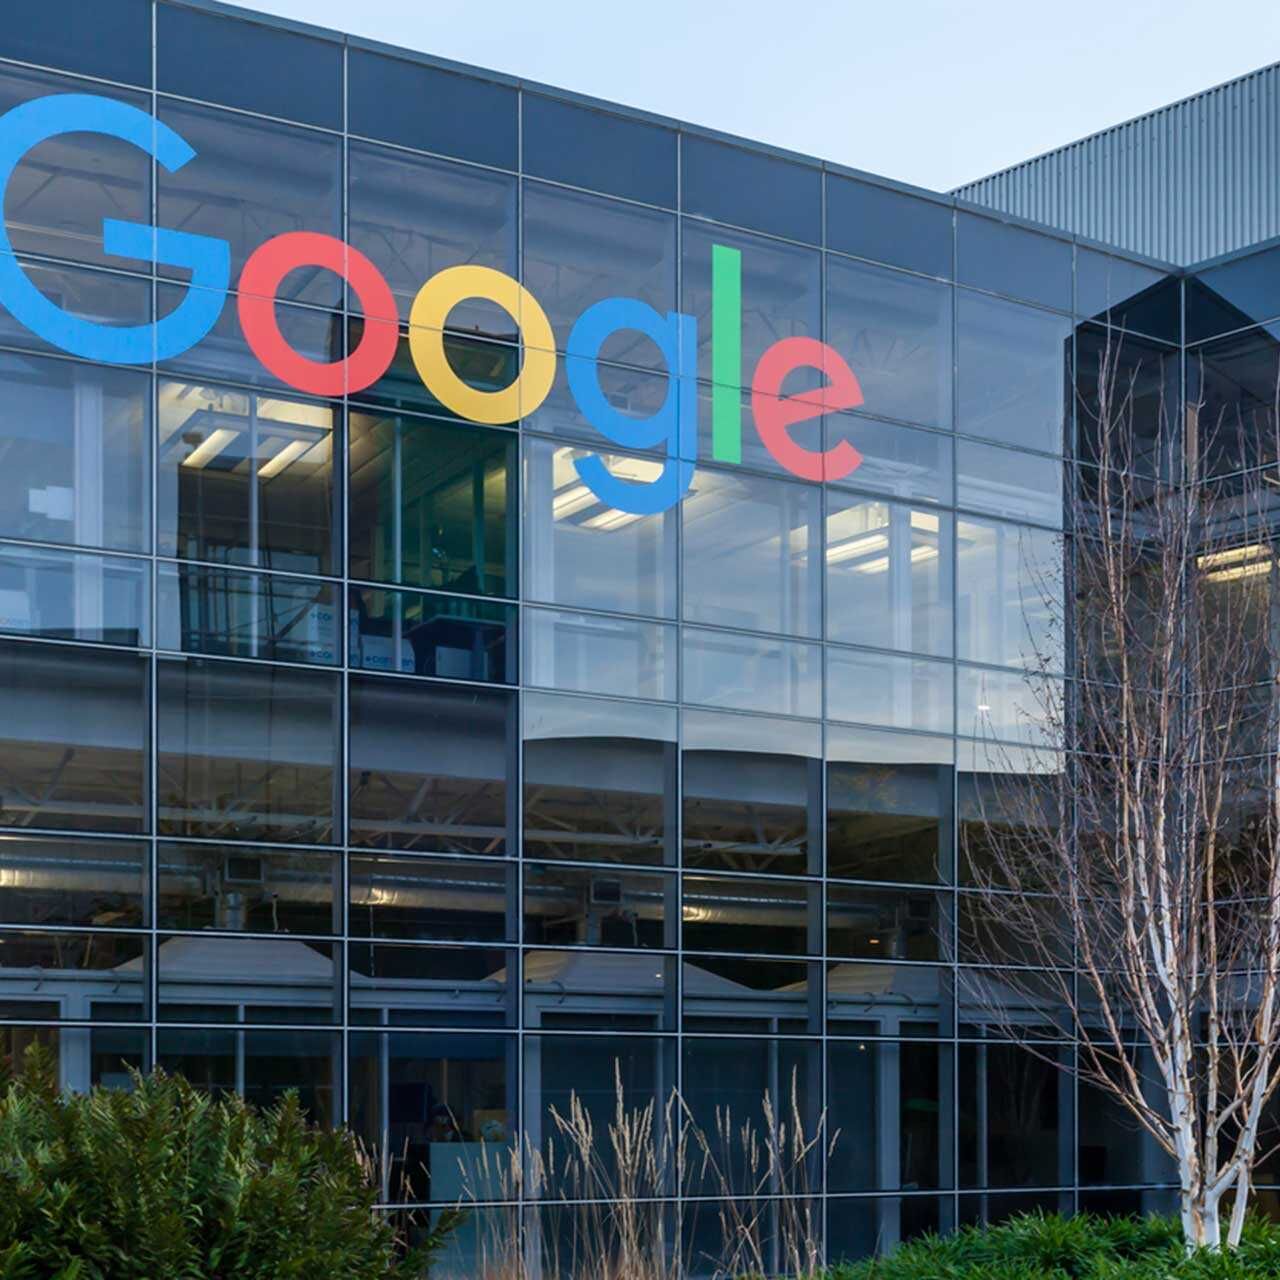 Google is een Amerikaans bedrijf dat online diensten aanbiedt, met het hoofdkantoor in Mountain View, Californië, in het zogenaamde Googleplex